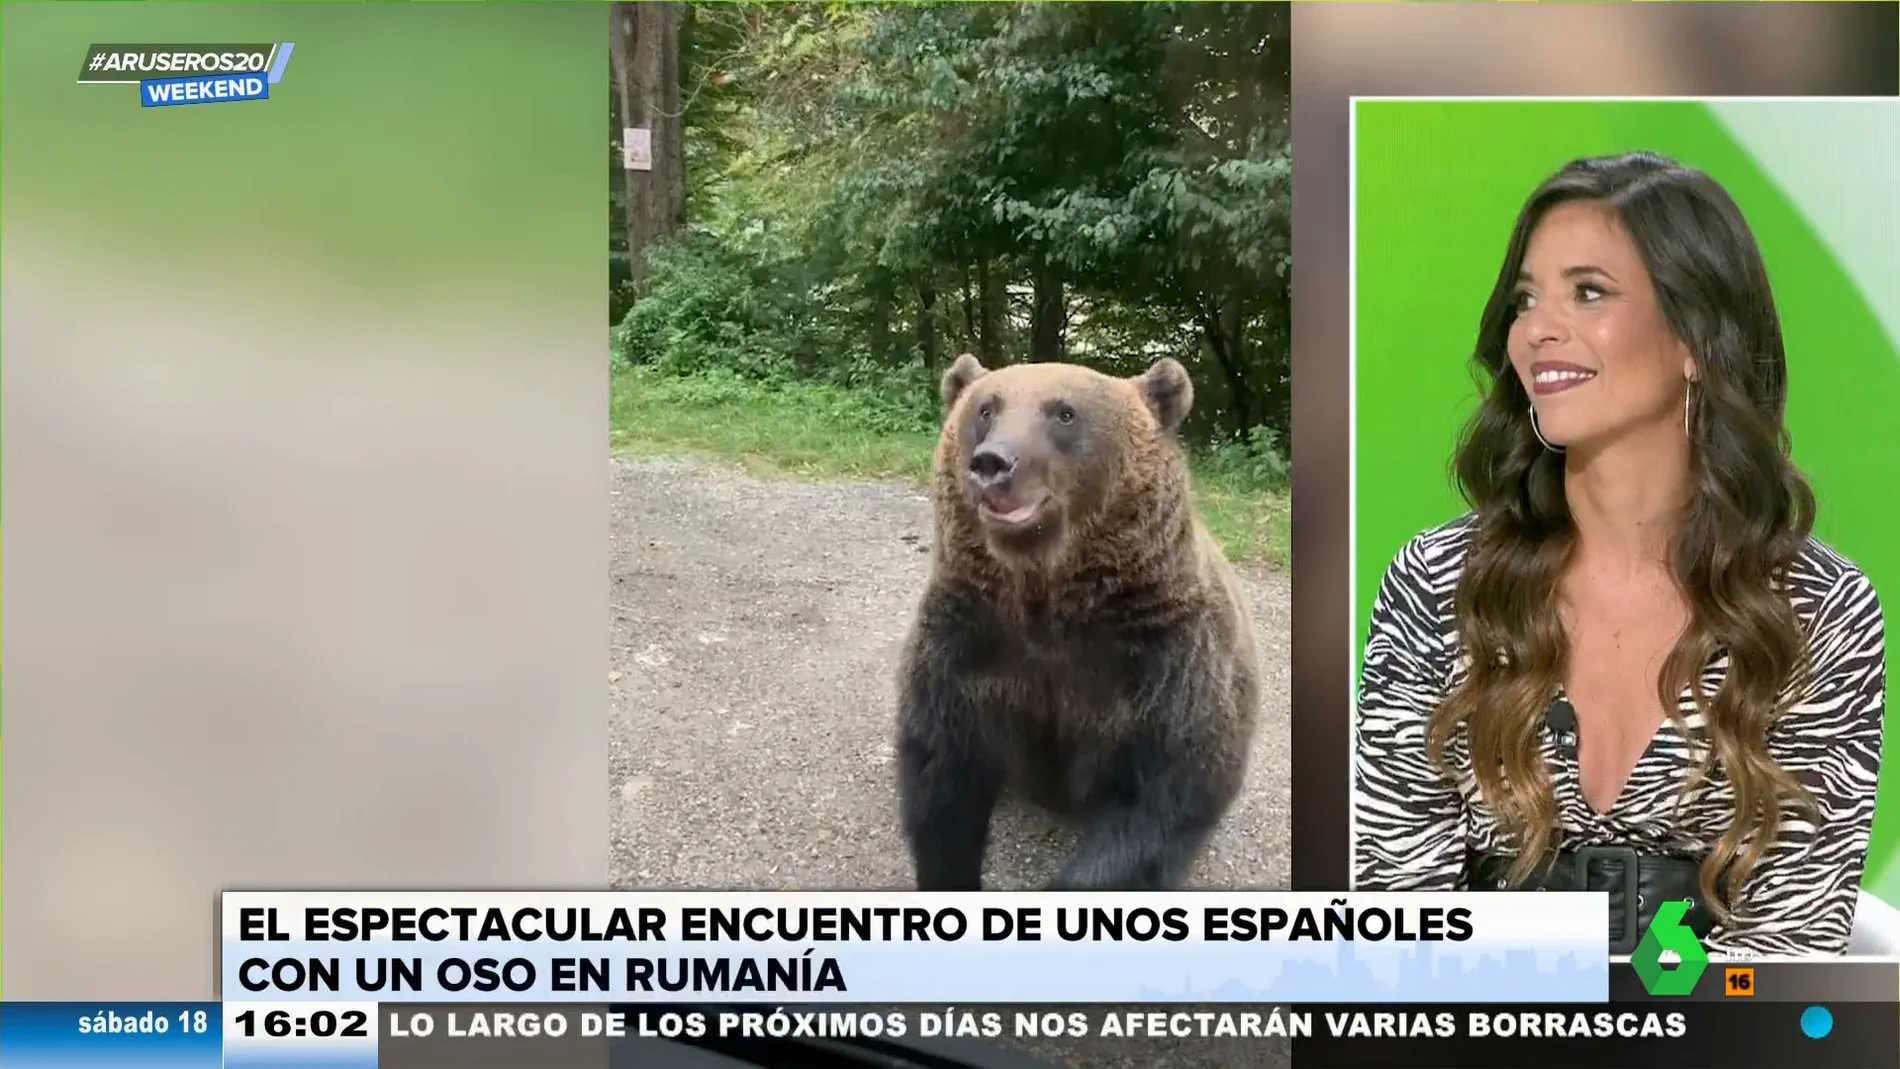 La bióloga Evelyn Segura alerta sobre las consecuencias de dar comida a osos salvajes